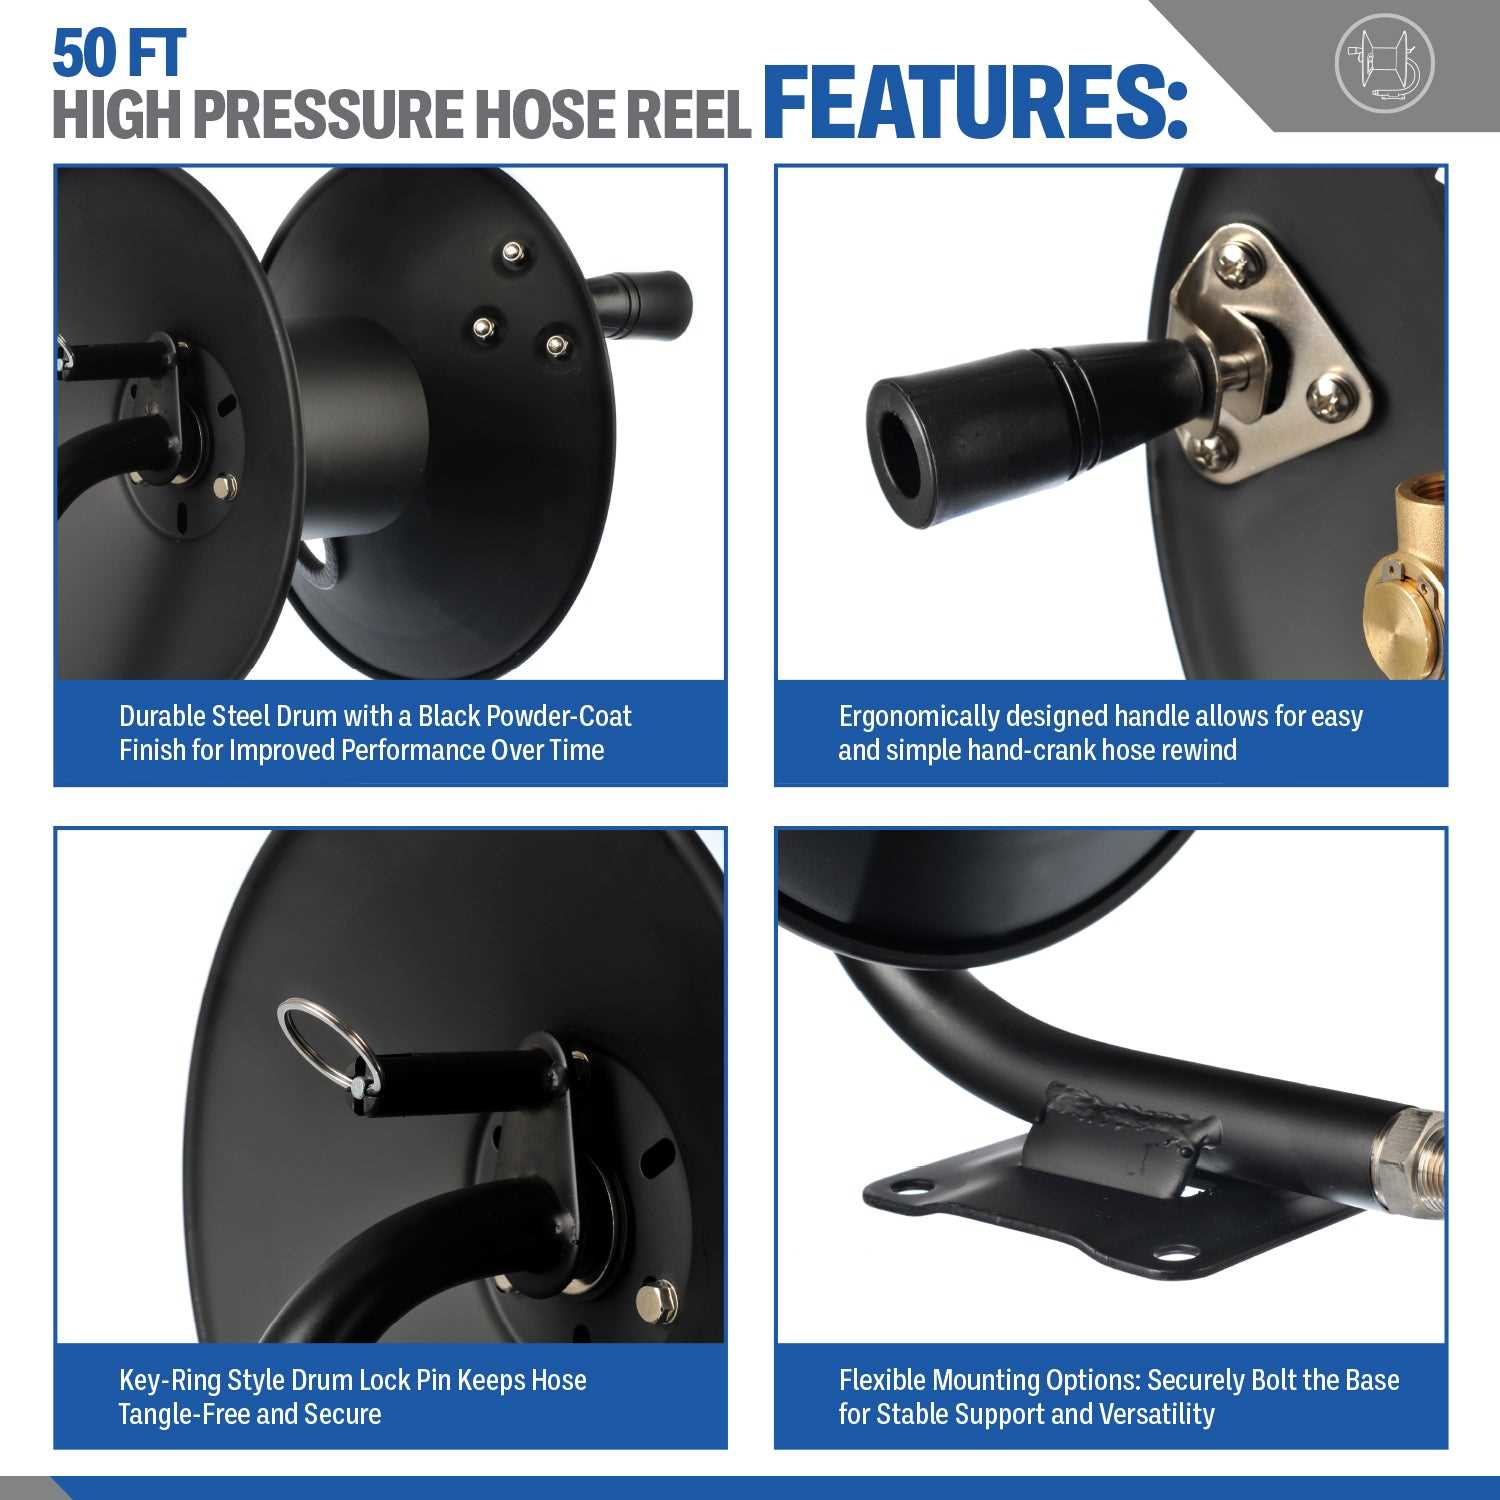 Pressure Washer 50 FT Hose Reel | High-Pressure Commercial Grade